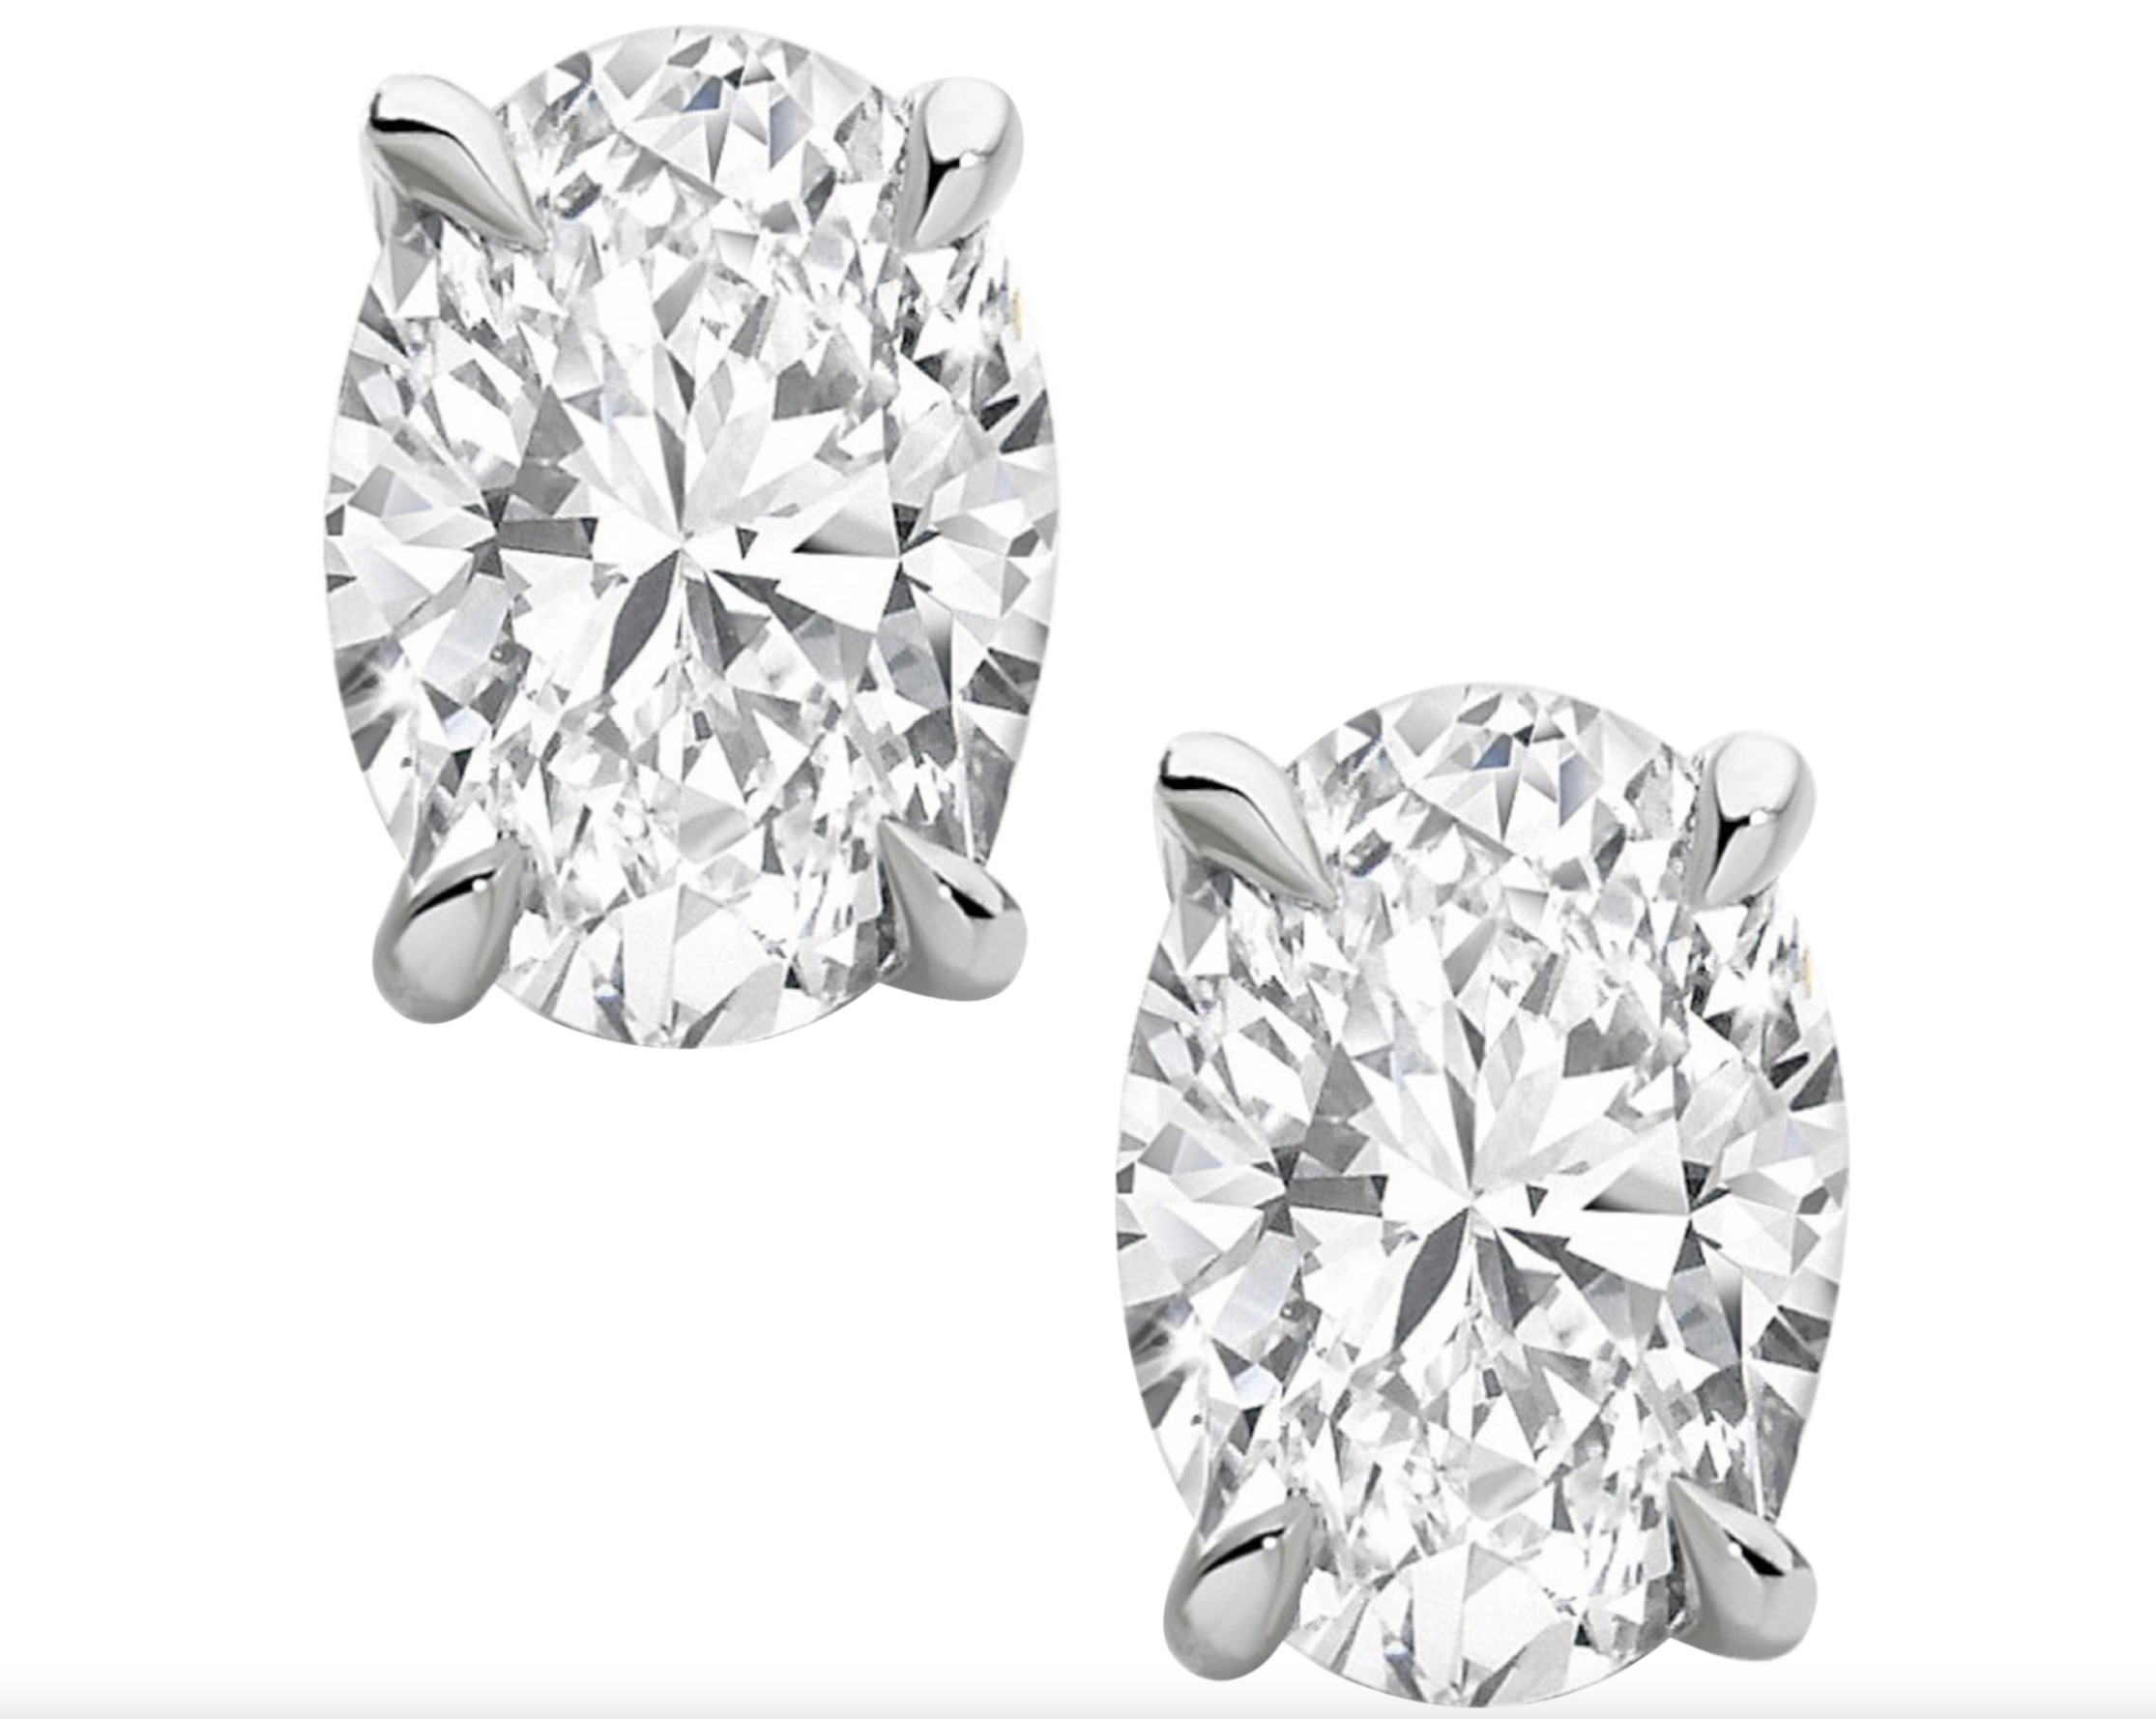 14k Gold Diamond Stud Earrings: buy online in NYC. Best price